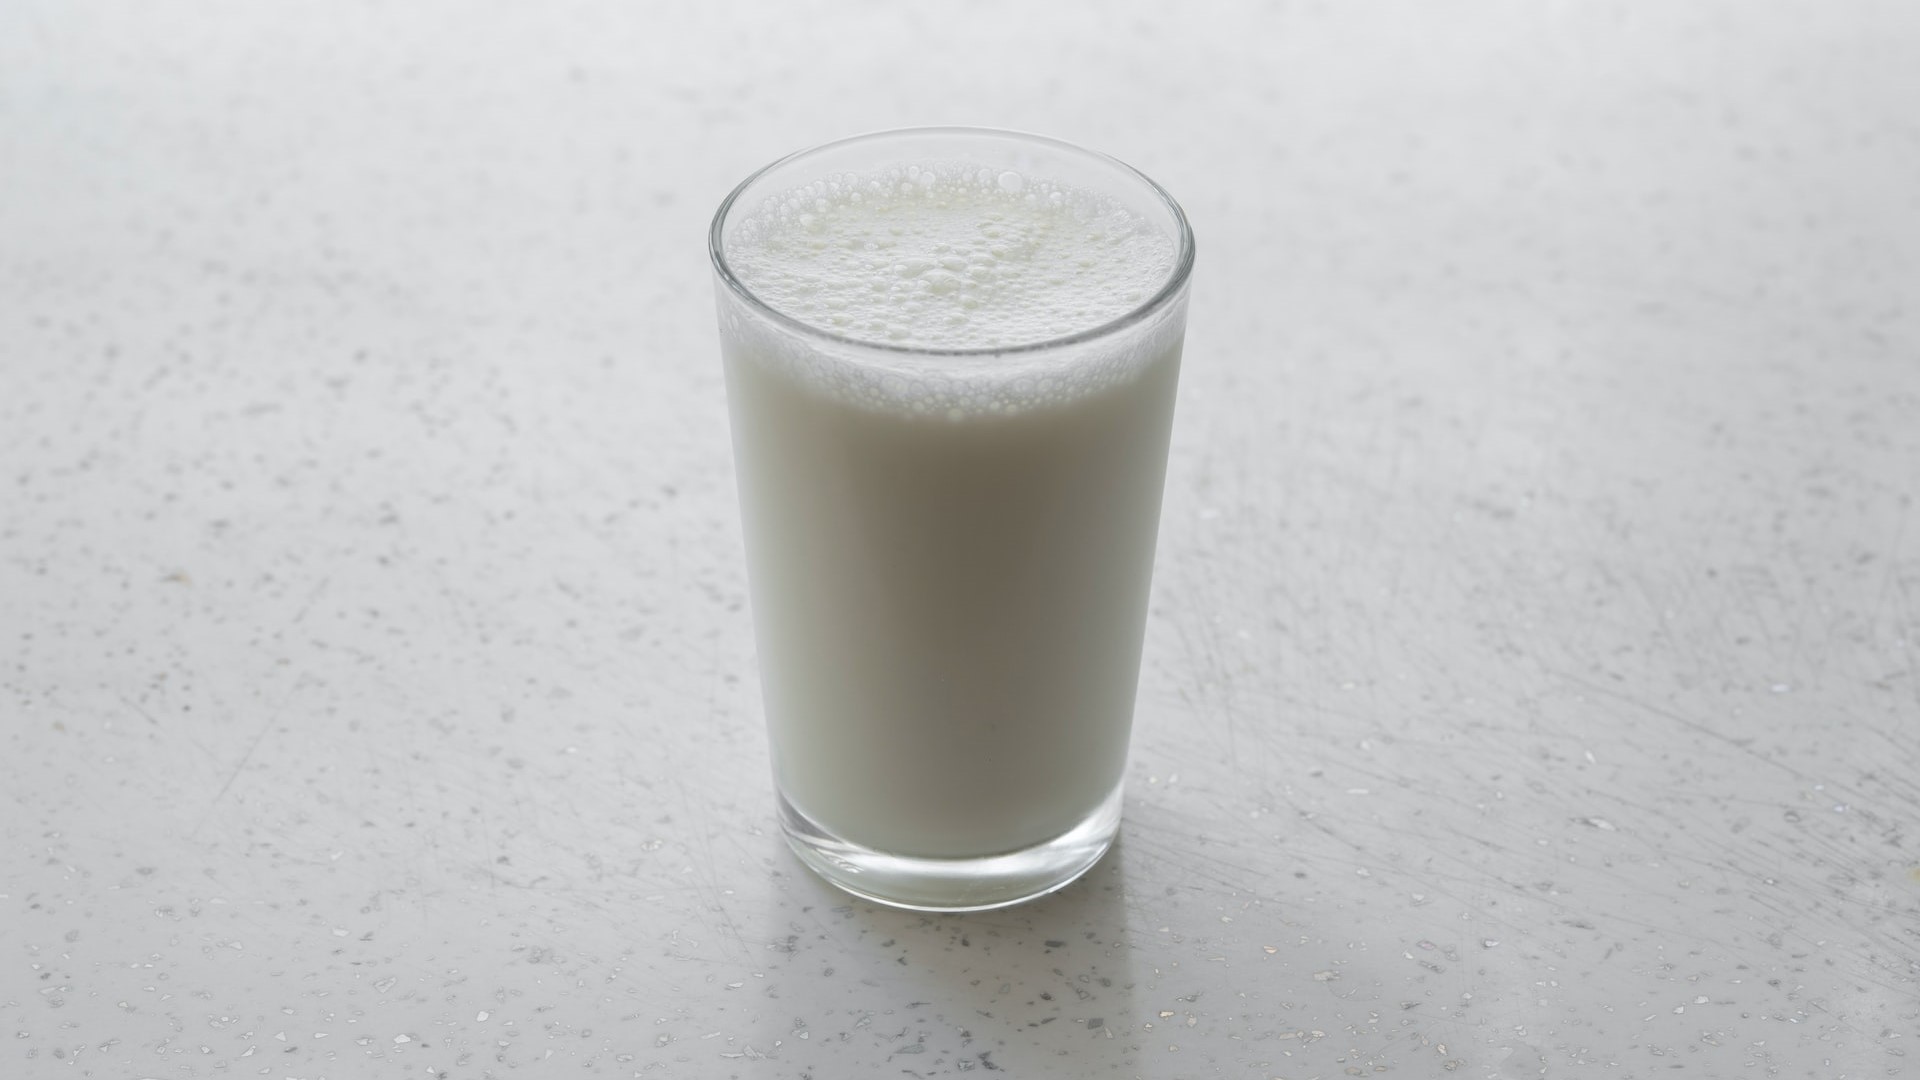 Mennyi kalcium van a tejben?